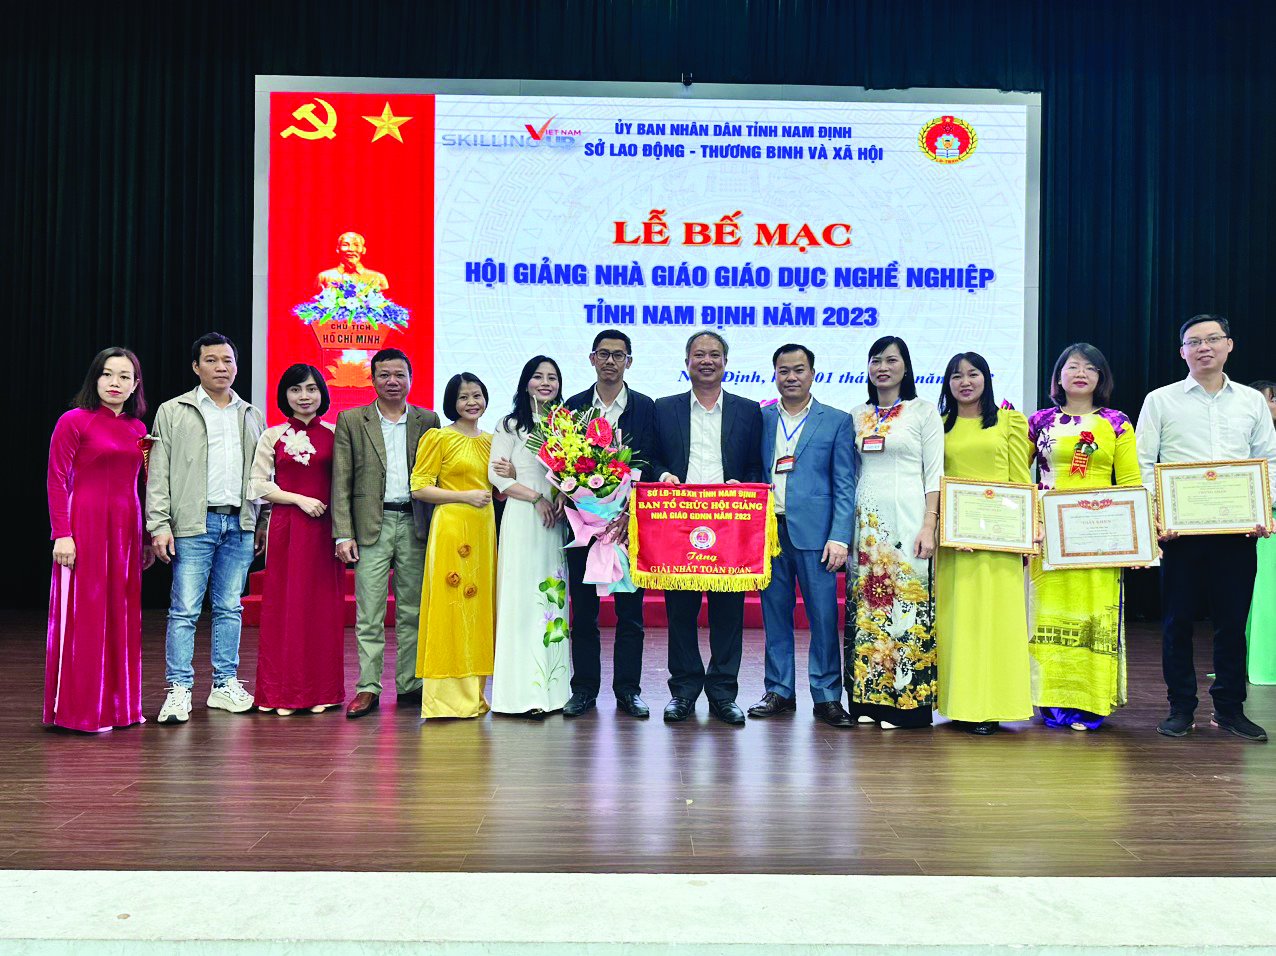  Tập thể lãnh đạo, giảng viên trường Cao đẳng Kinh tế và Công nghệ Nam Định nhận cờ “Giải Nhất toàn đoàn” do UBND tỉnh trao tặng trong kỳ Hội giảng Nhà giáo Giáo dục nghề nghiệp tỉnh Nam Định năm 2023.